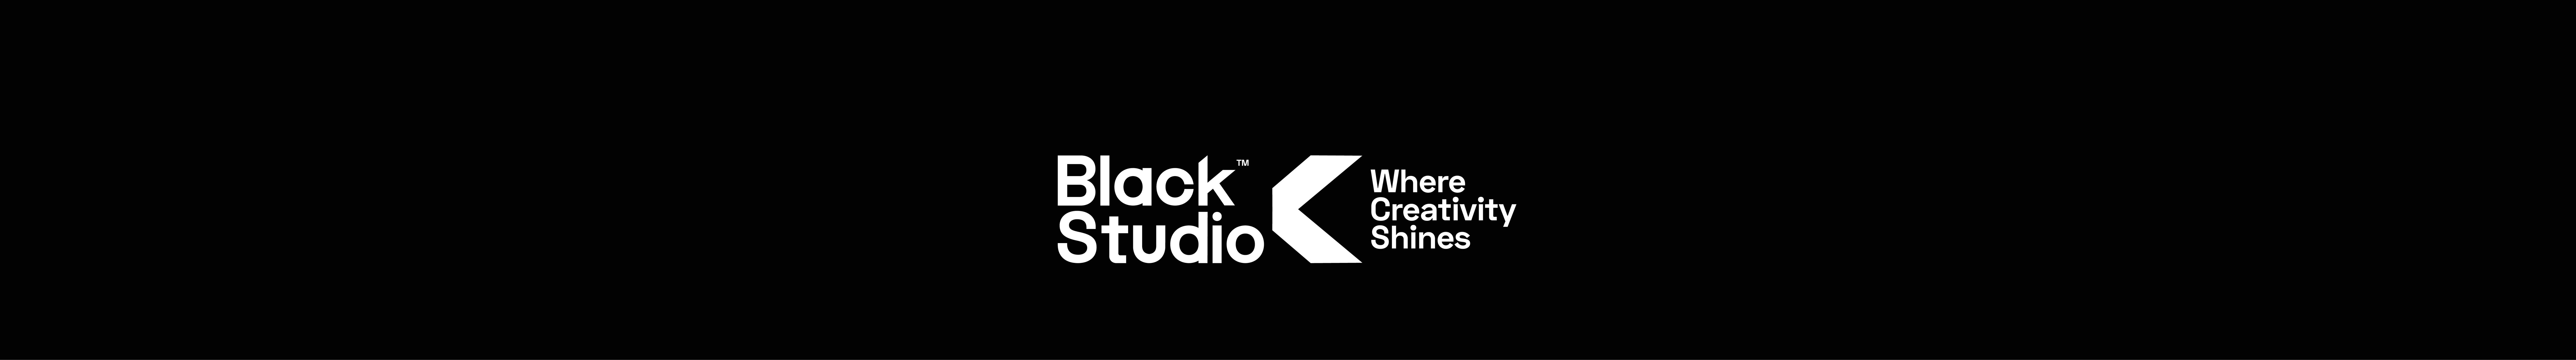 Black Studio™'s profile banner